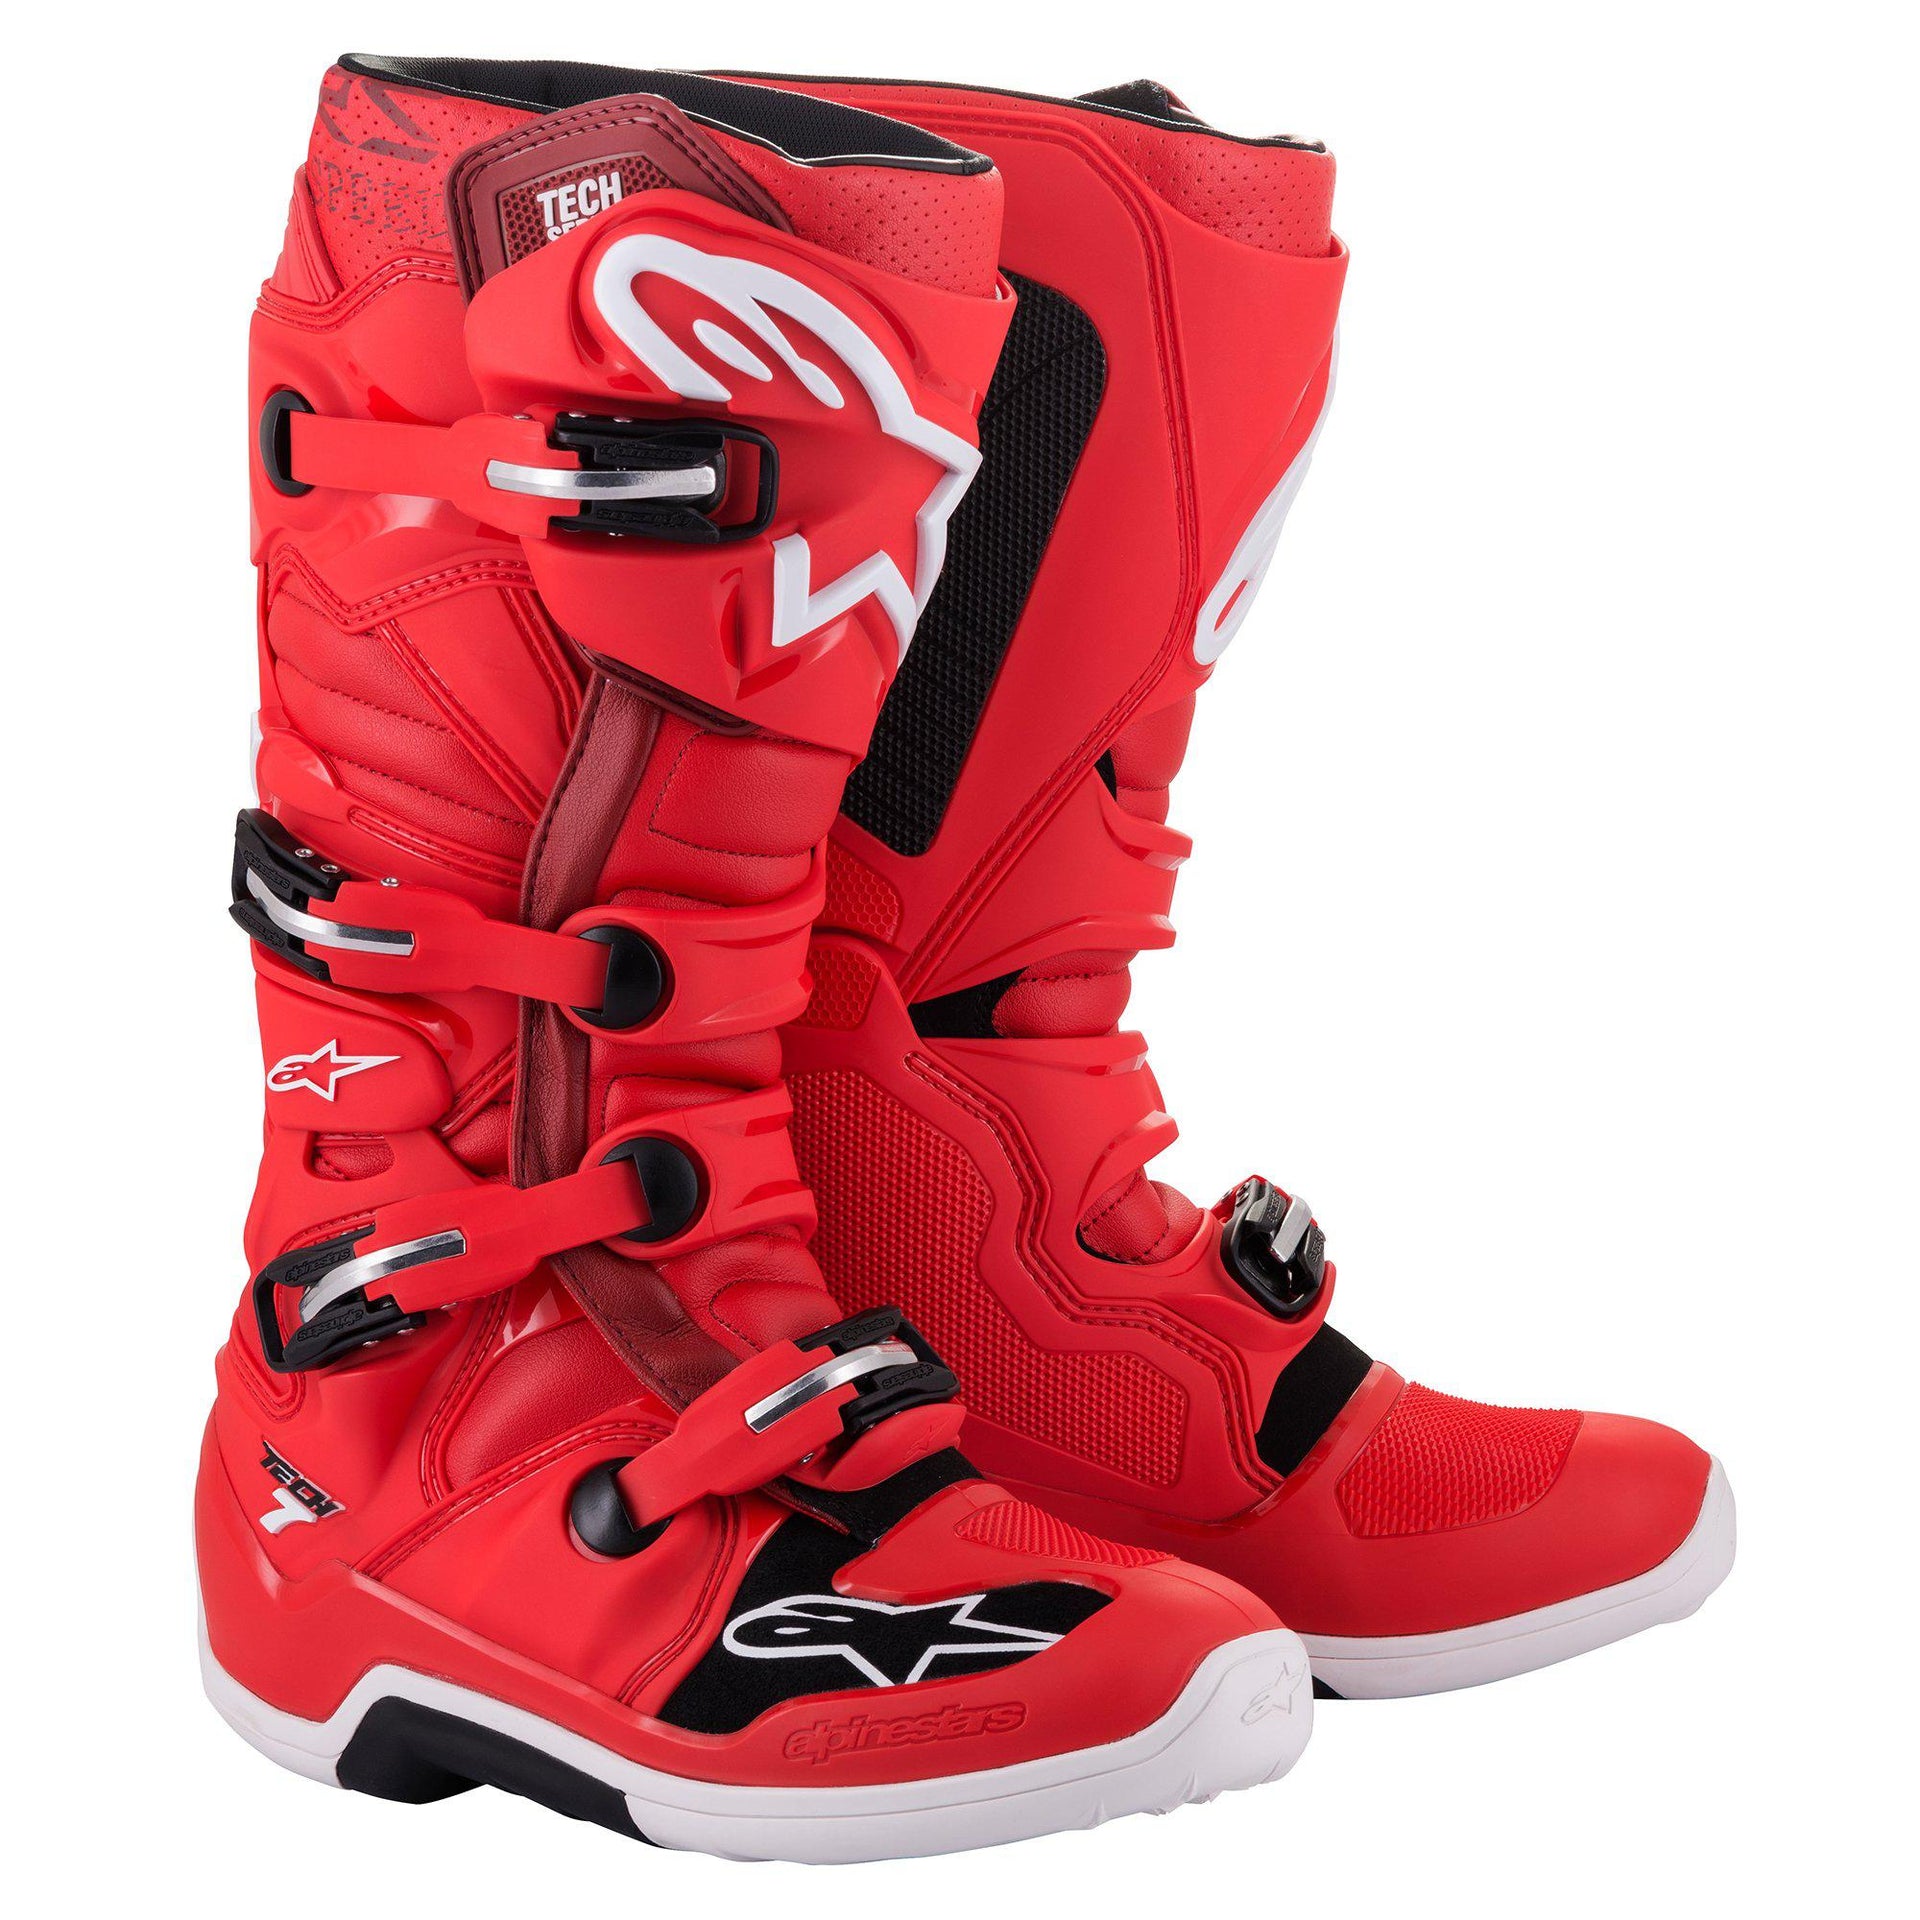 Alpinestars - Tech 7 Boots